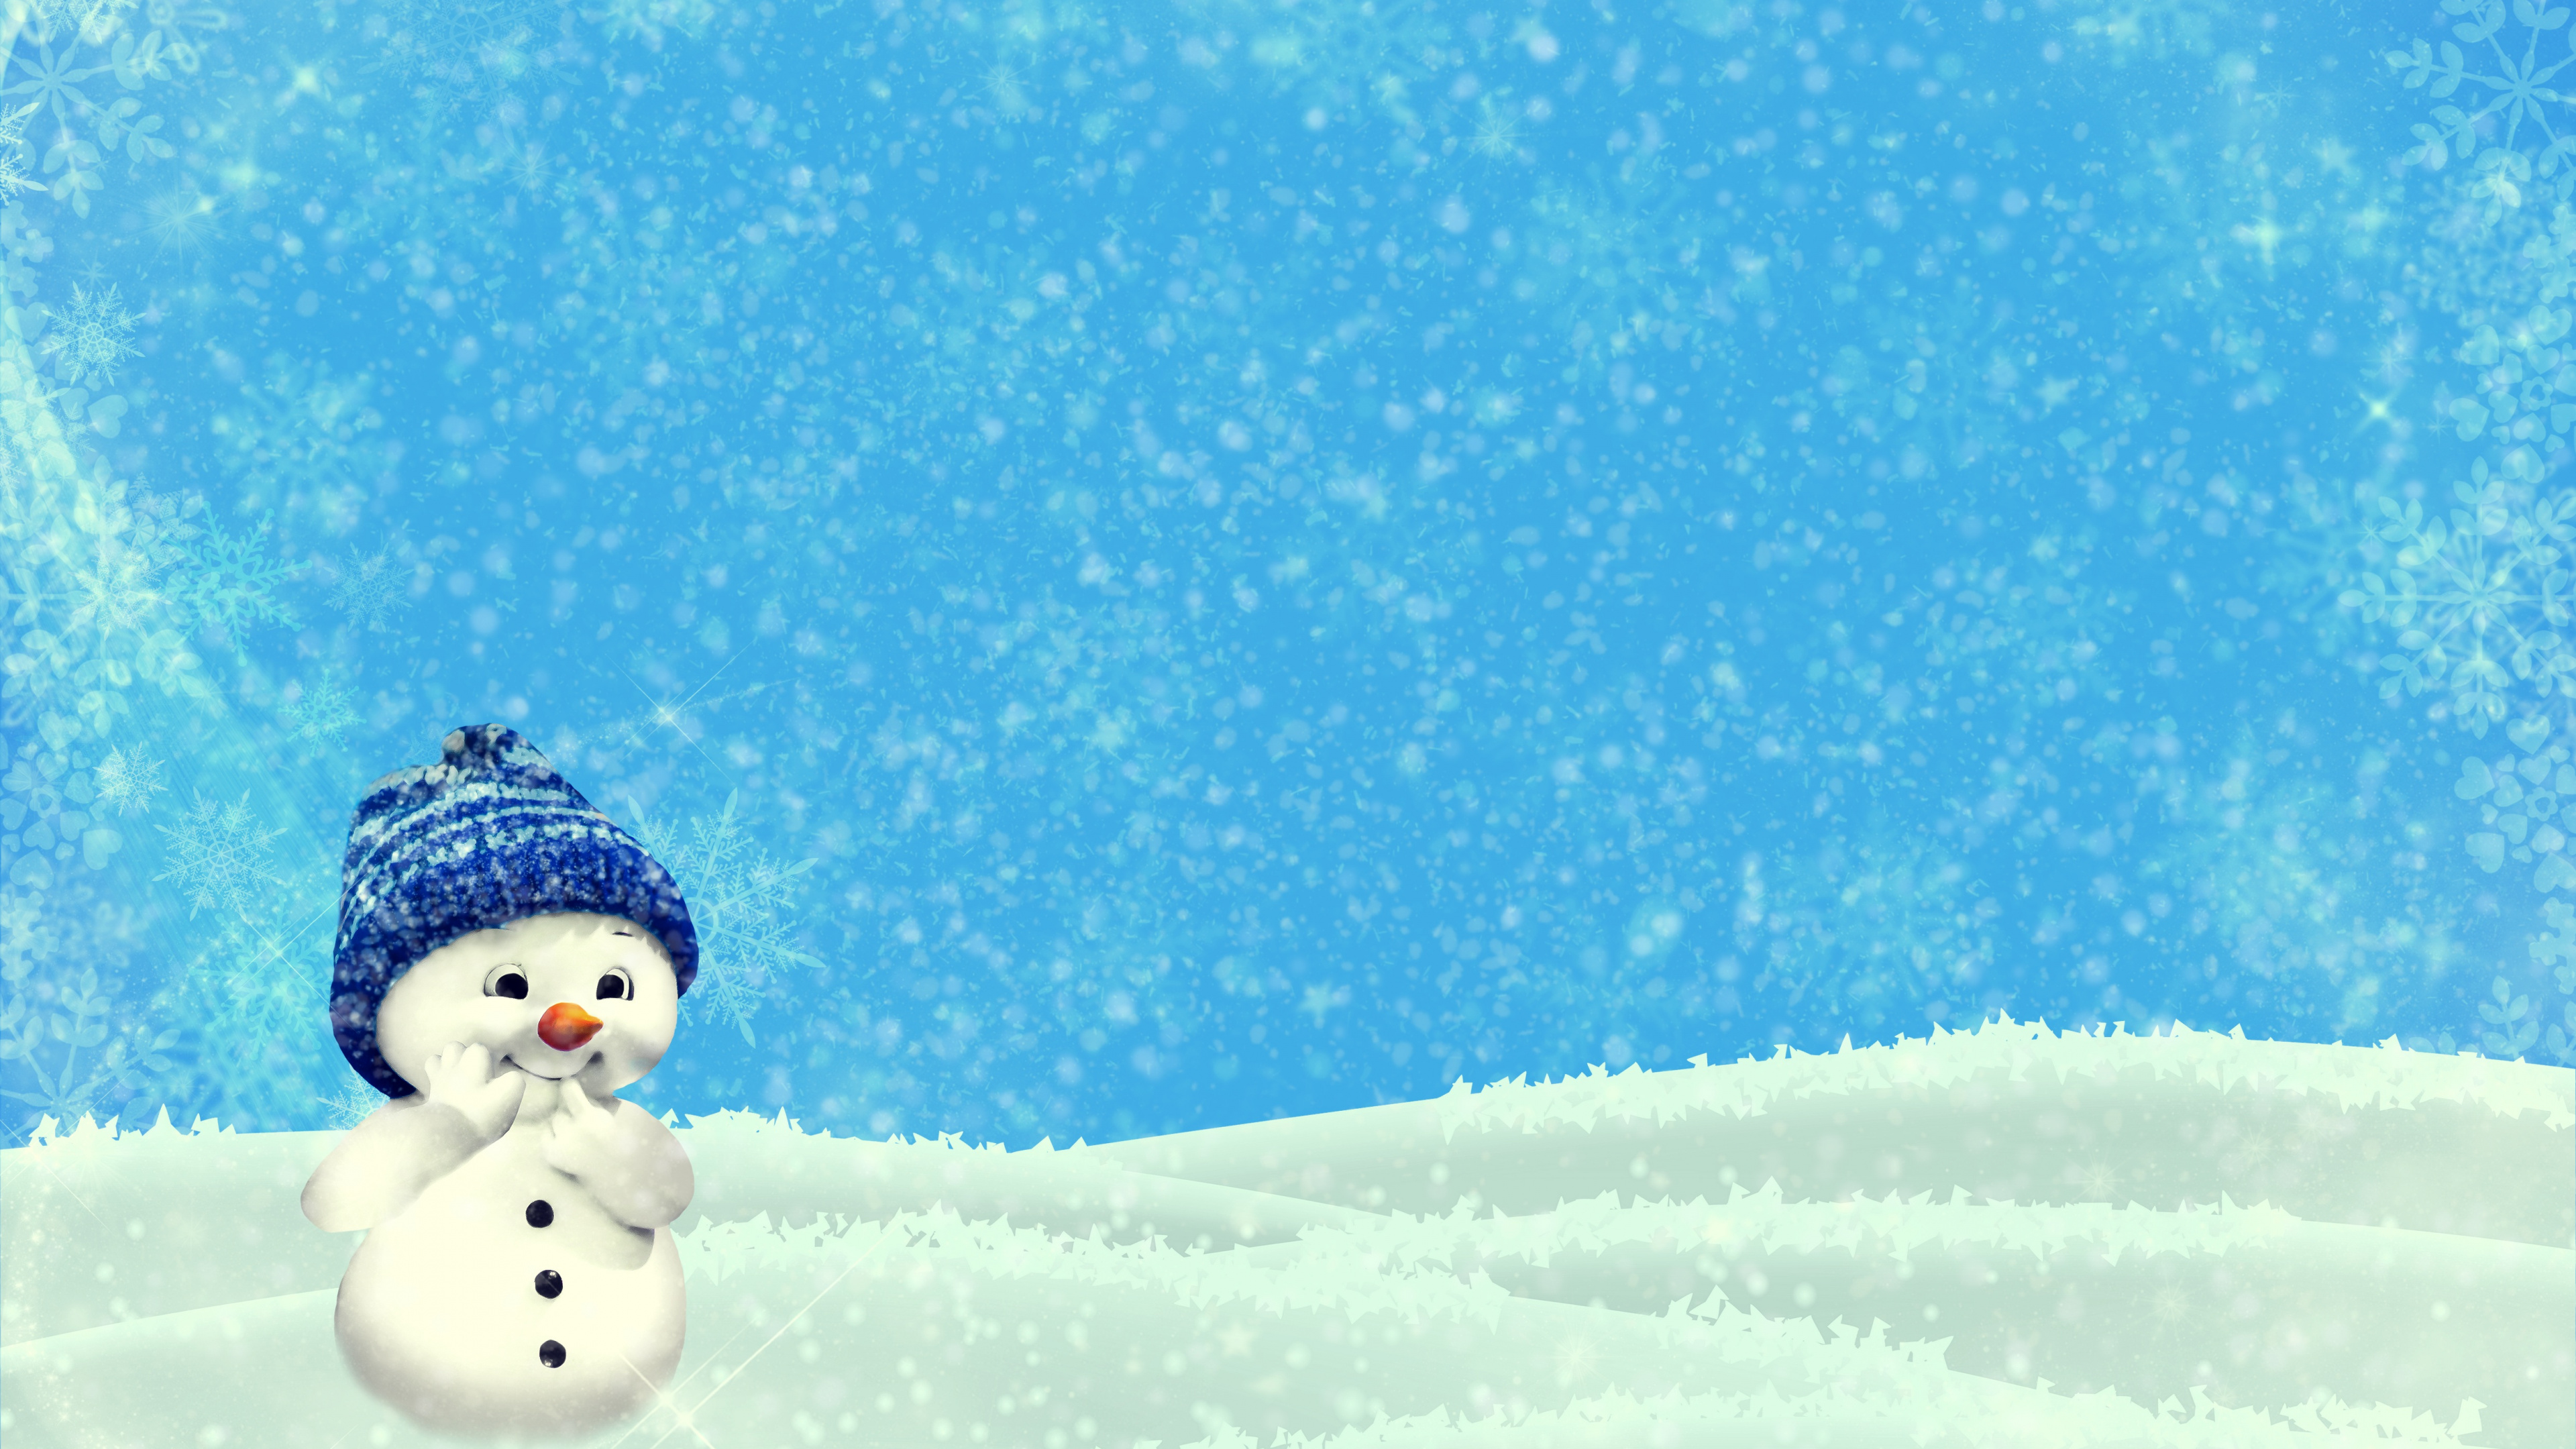 Schneemann, Weihnachten, Schnee, Winter, Einfrieren. Wallpaper in 3840x2160 Resolution